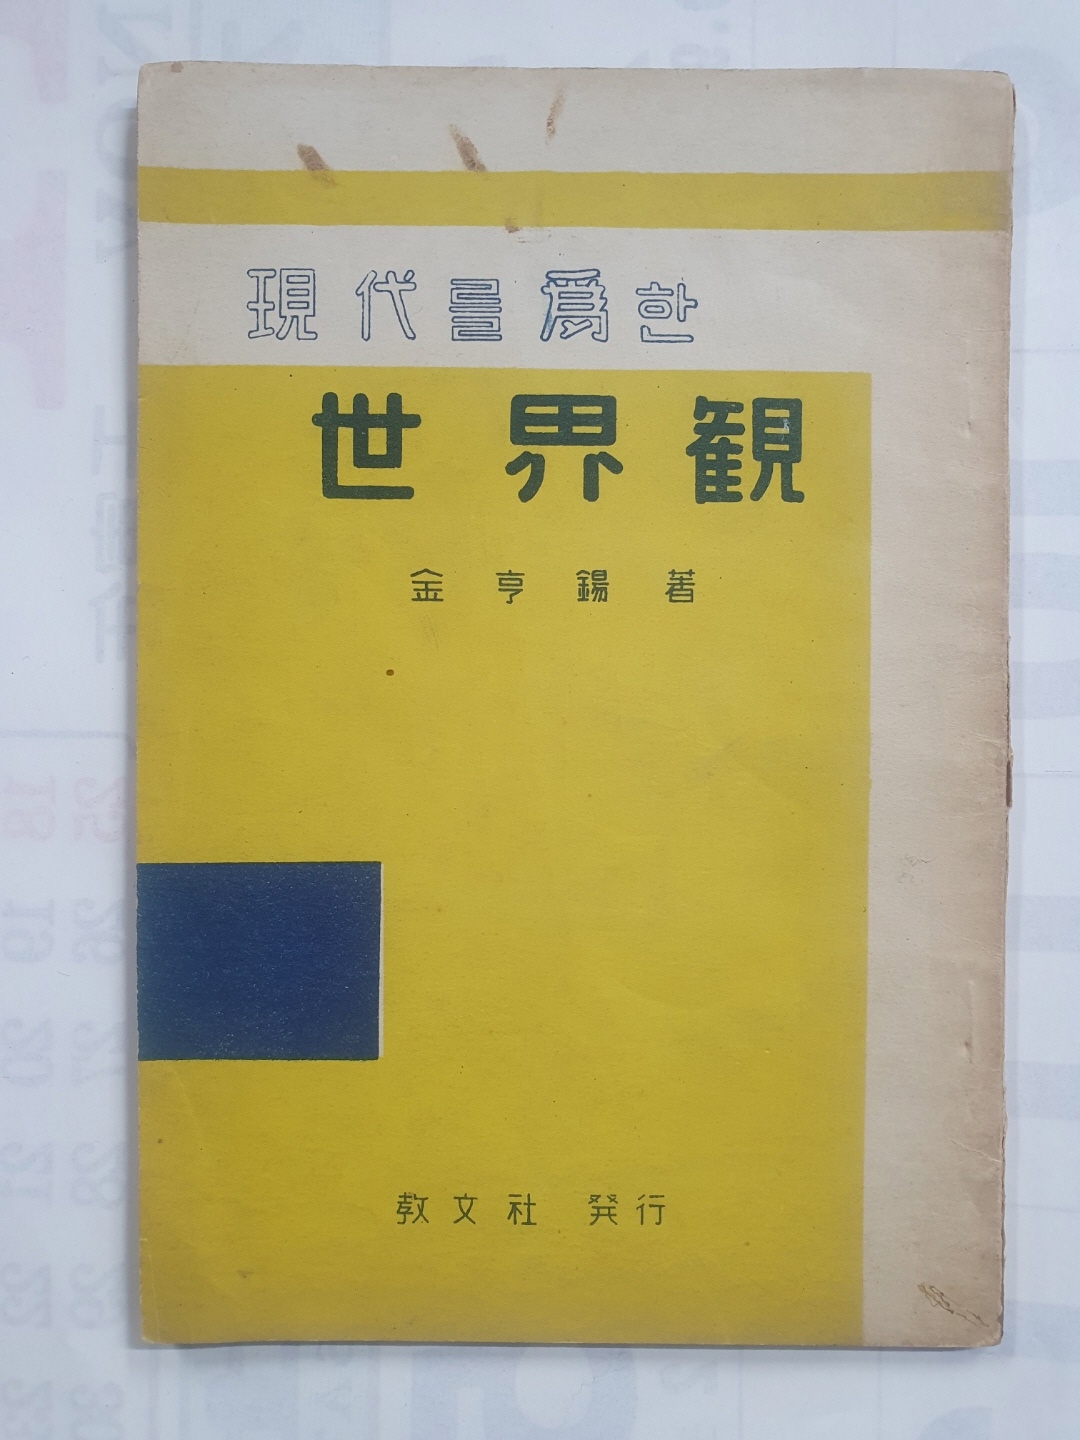 철학자 김형석 에세이 [현대를 위한 세계관] 1957 초판